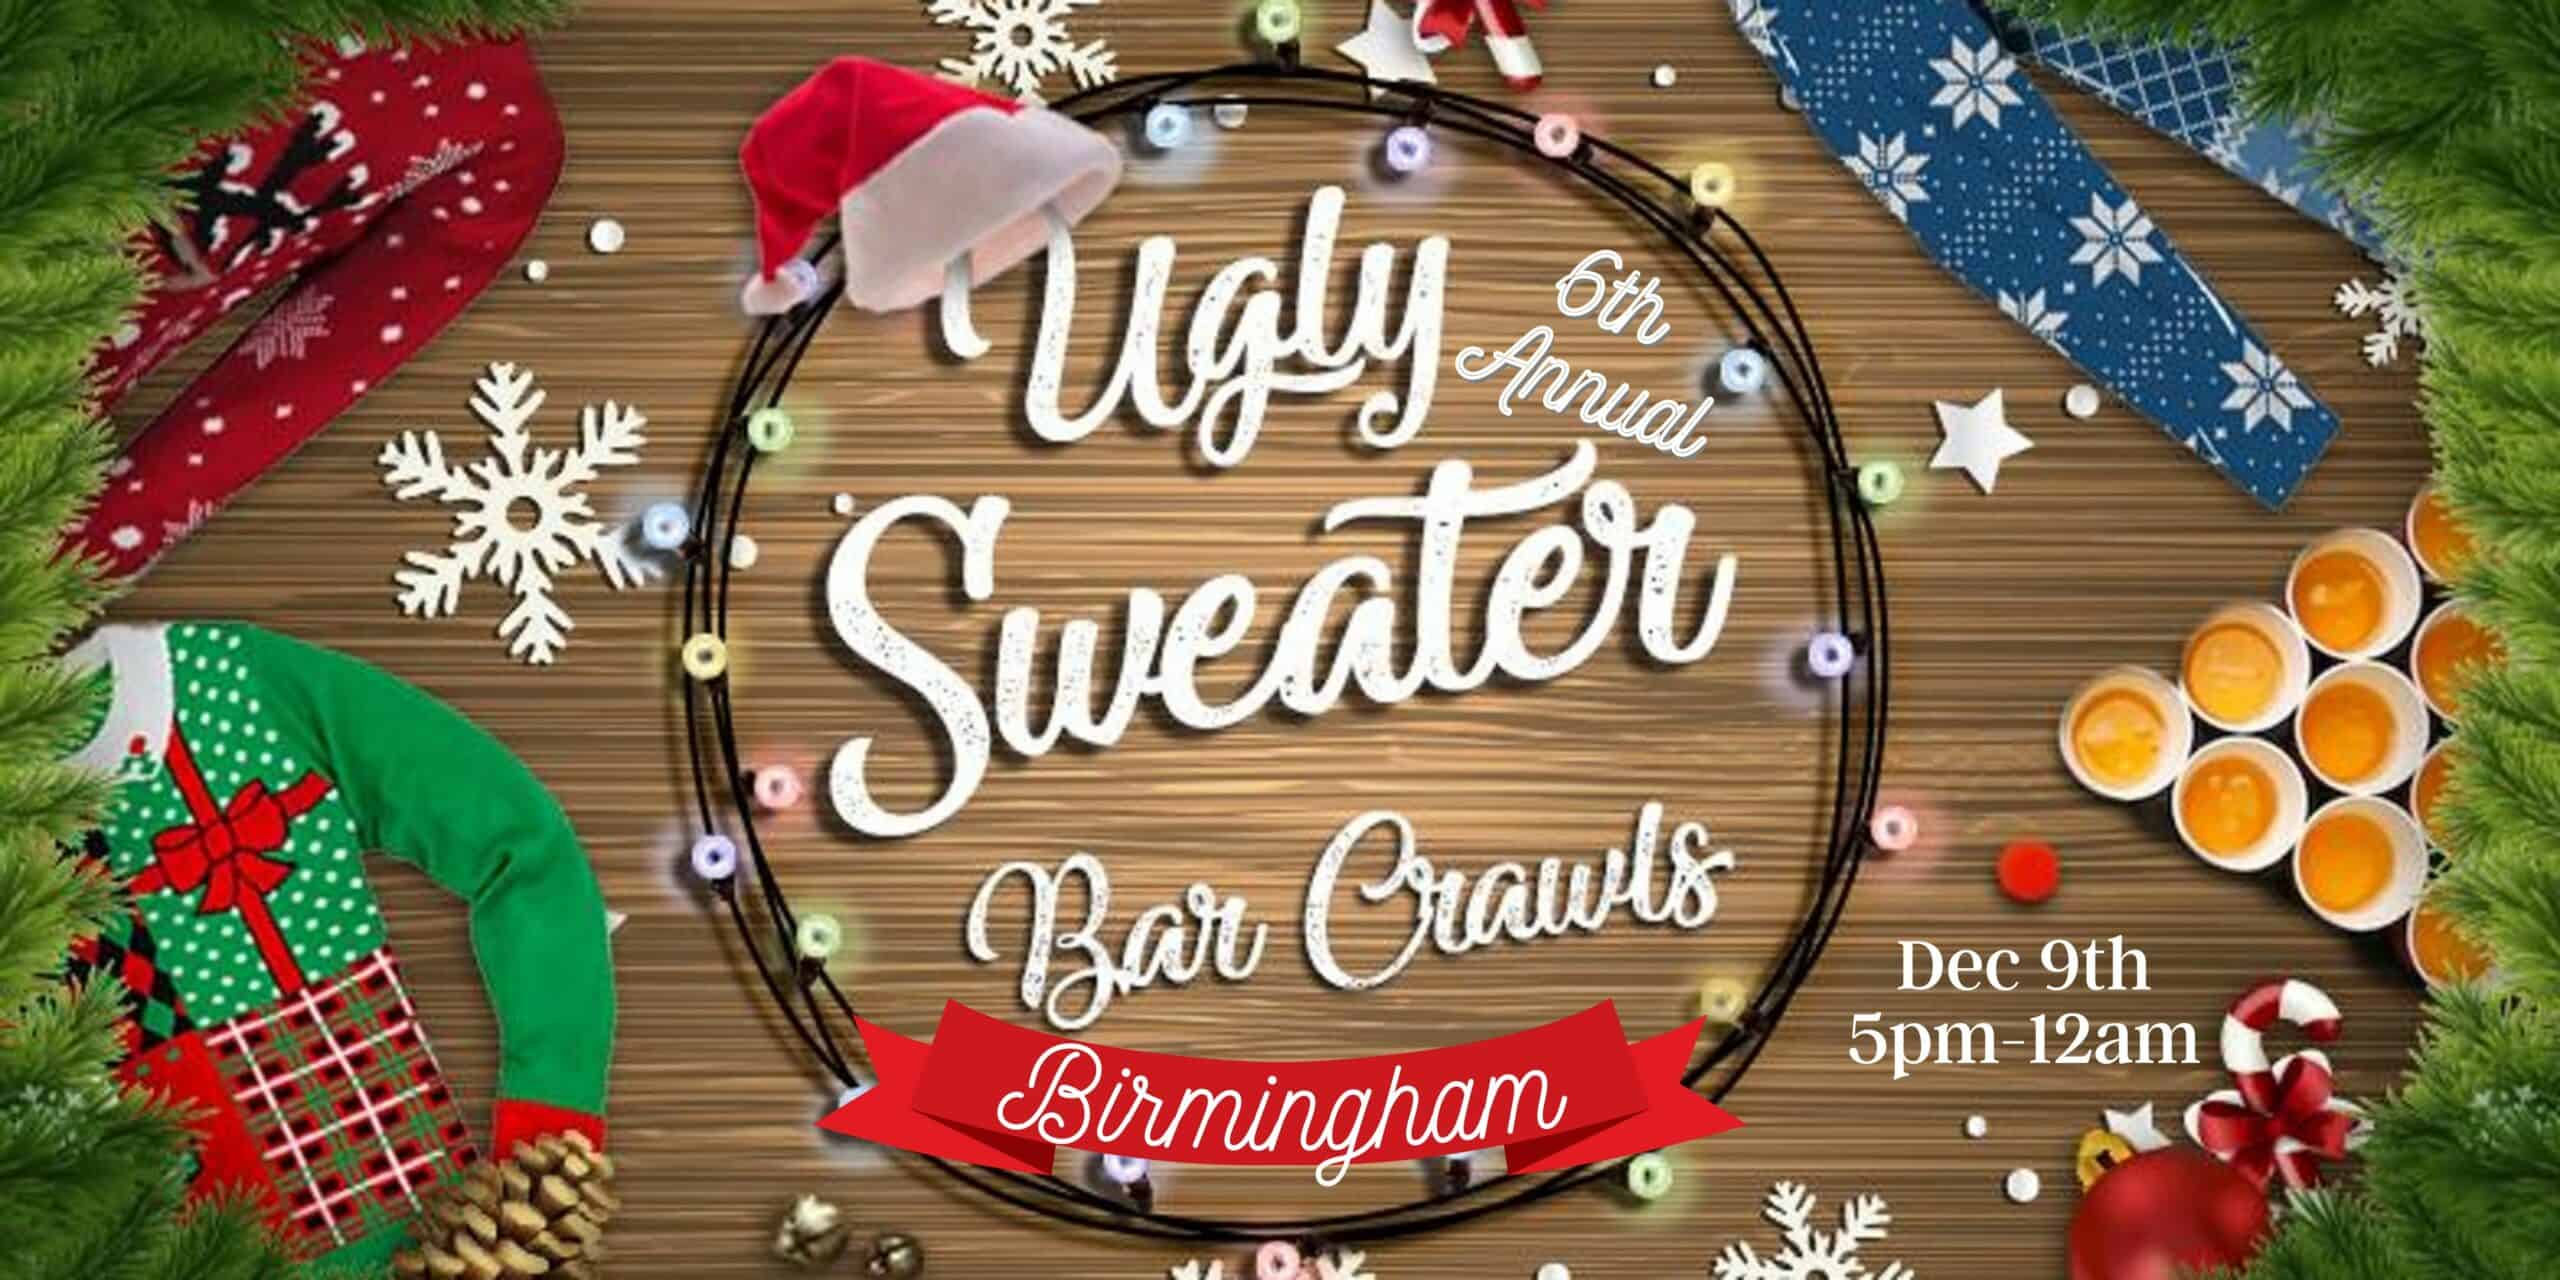 Birmingham Ugly Sweater Bar Crawl